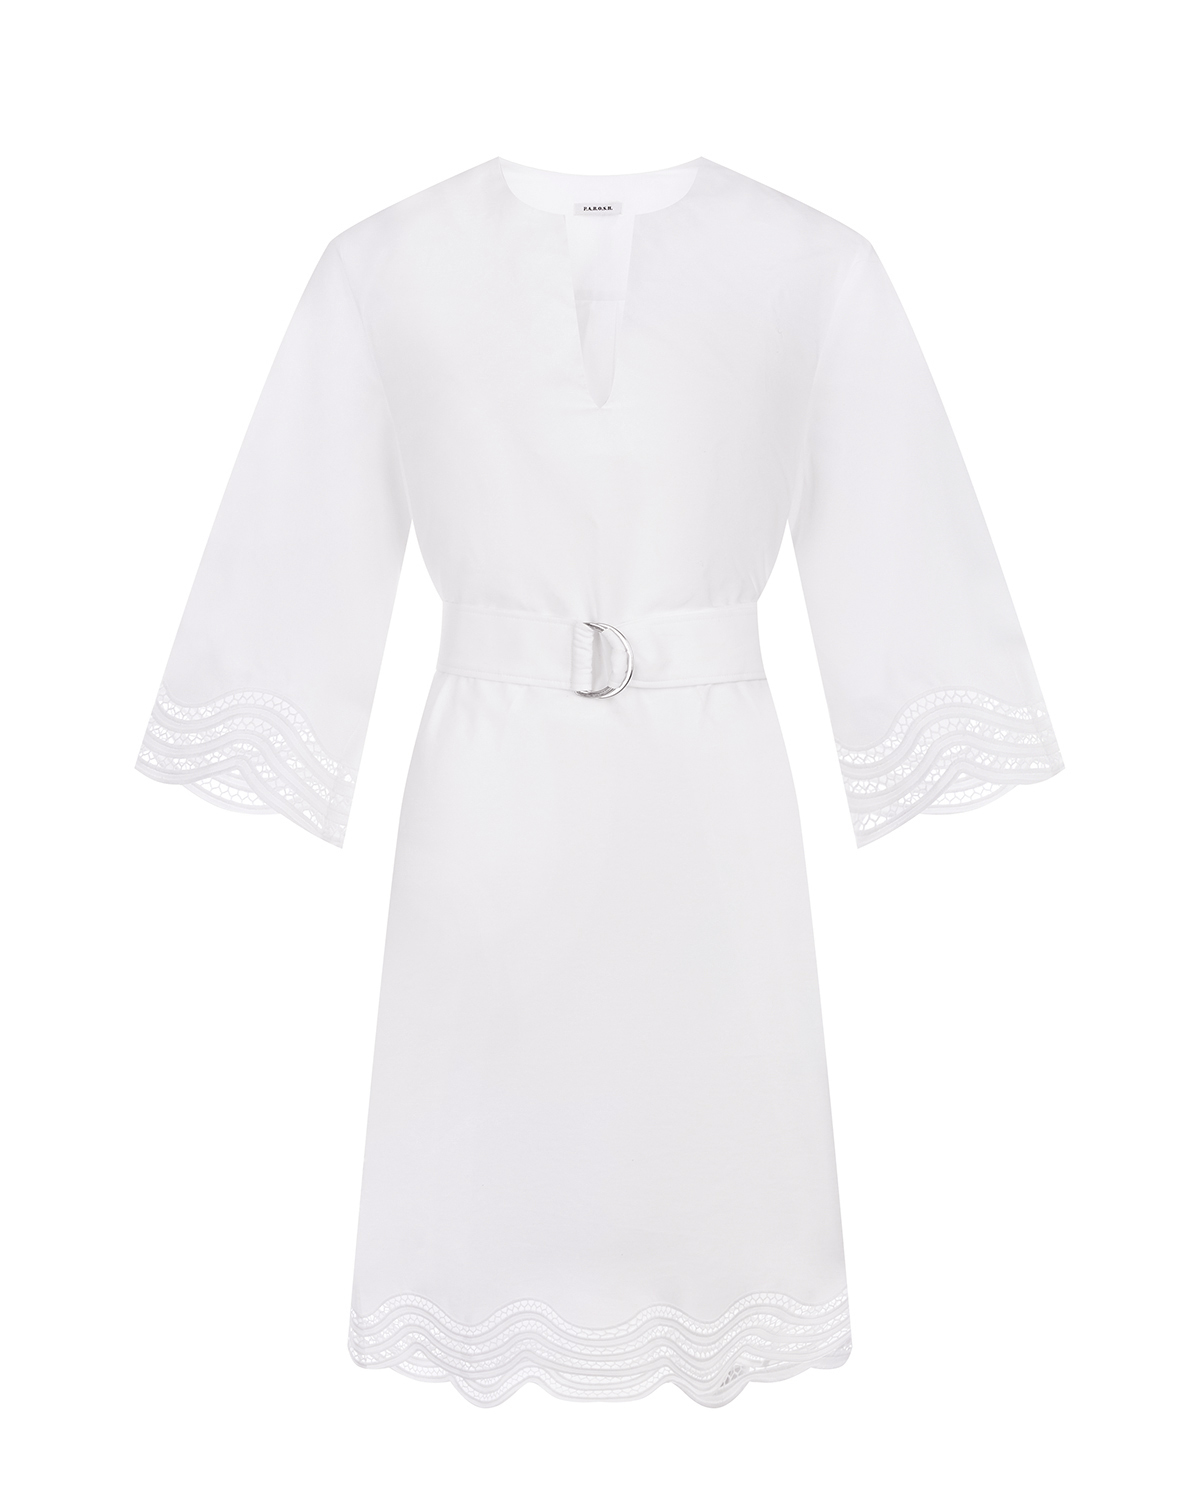 Платье с поясом и кружевной отделкой Parosh, размер 40, цвет белый - фото 1